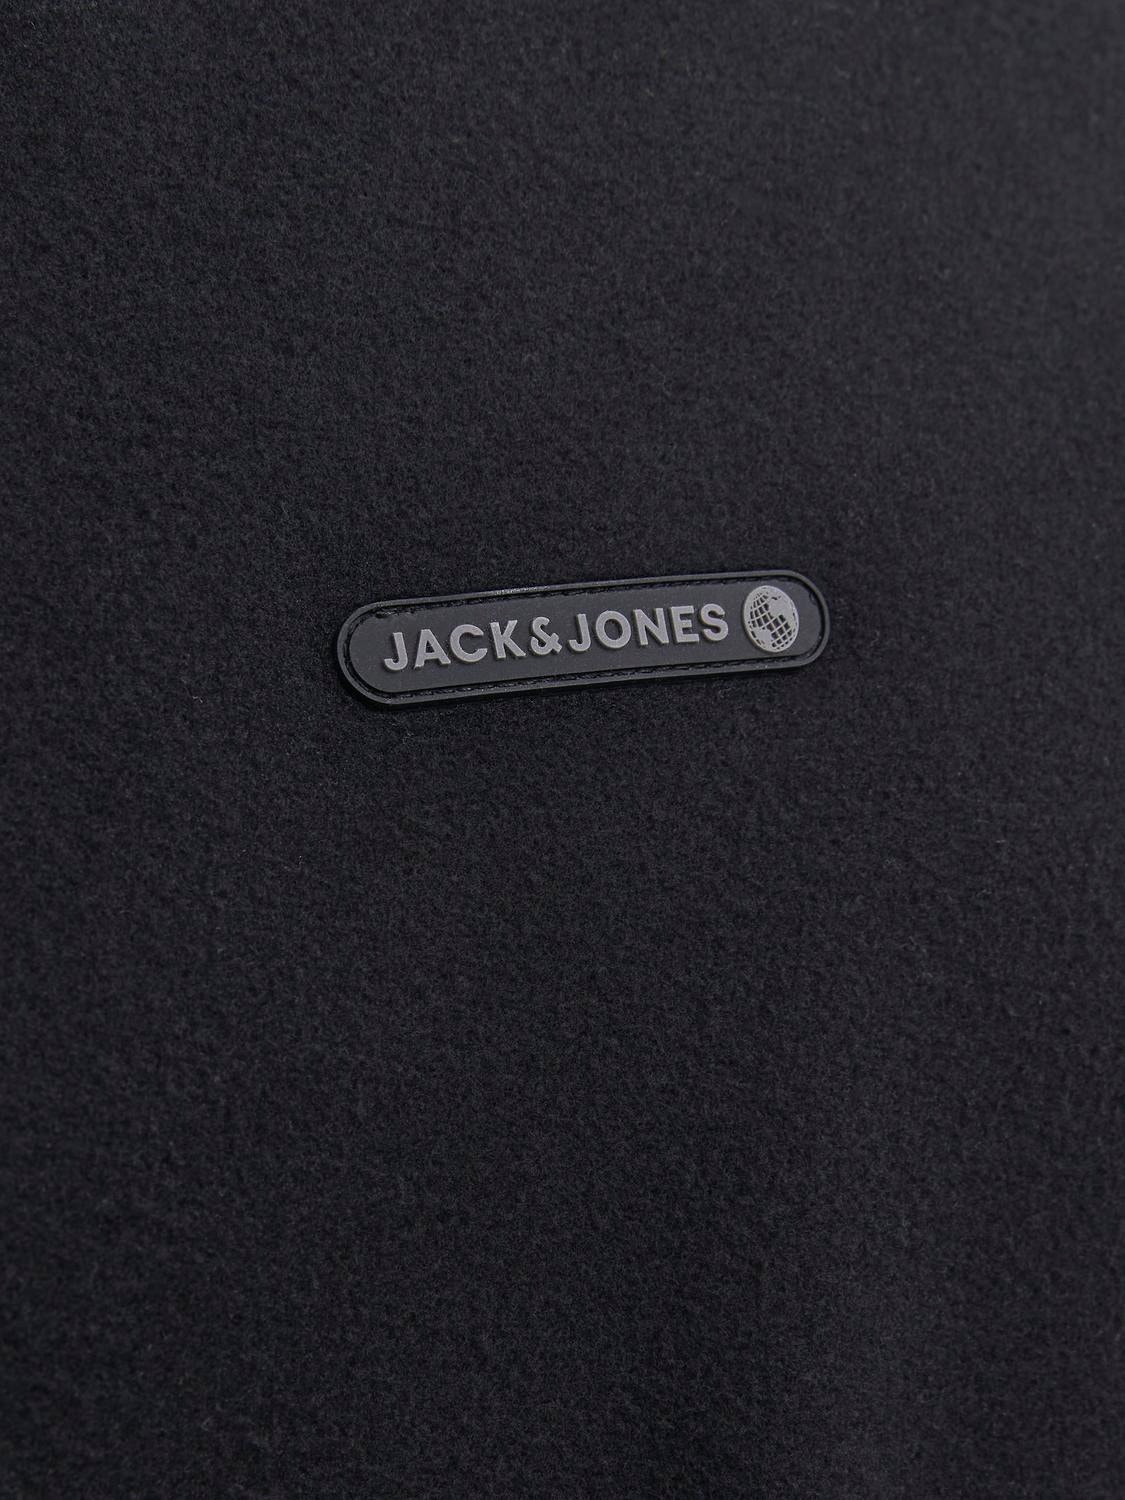 Jack & Jones Sudadera con cuello redondo Logotipo -Black - 12242194